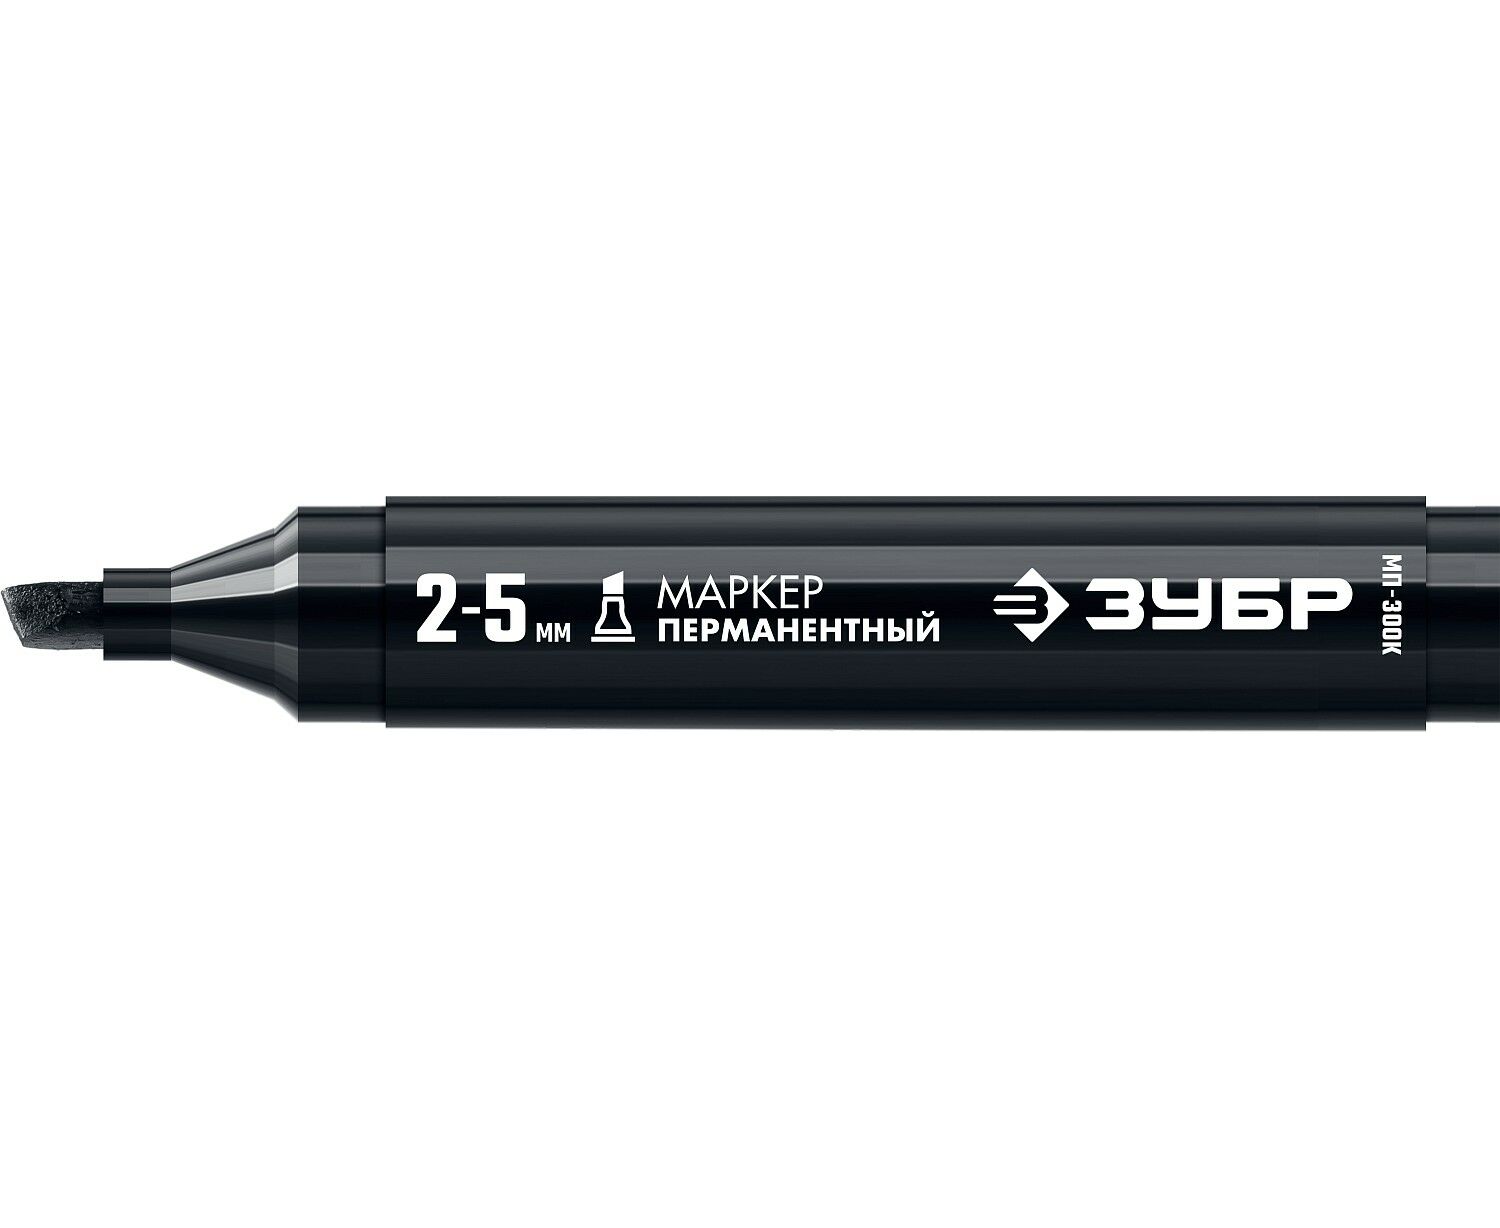 Маркер строительный ЗУБР МП-300К черный, 2-5 мм, клиновидный, перманентный строительный маркер перманентный многоразового использования зёленый pica visor 990 36